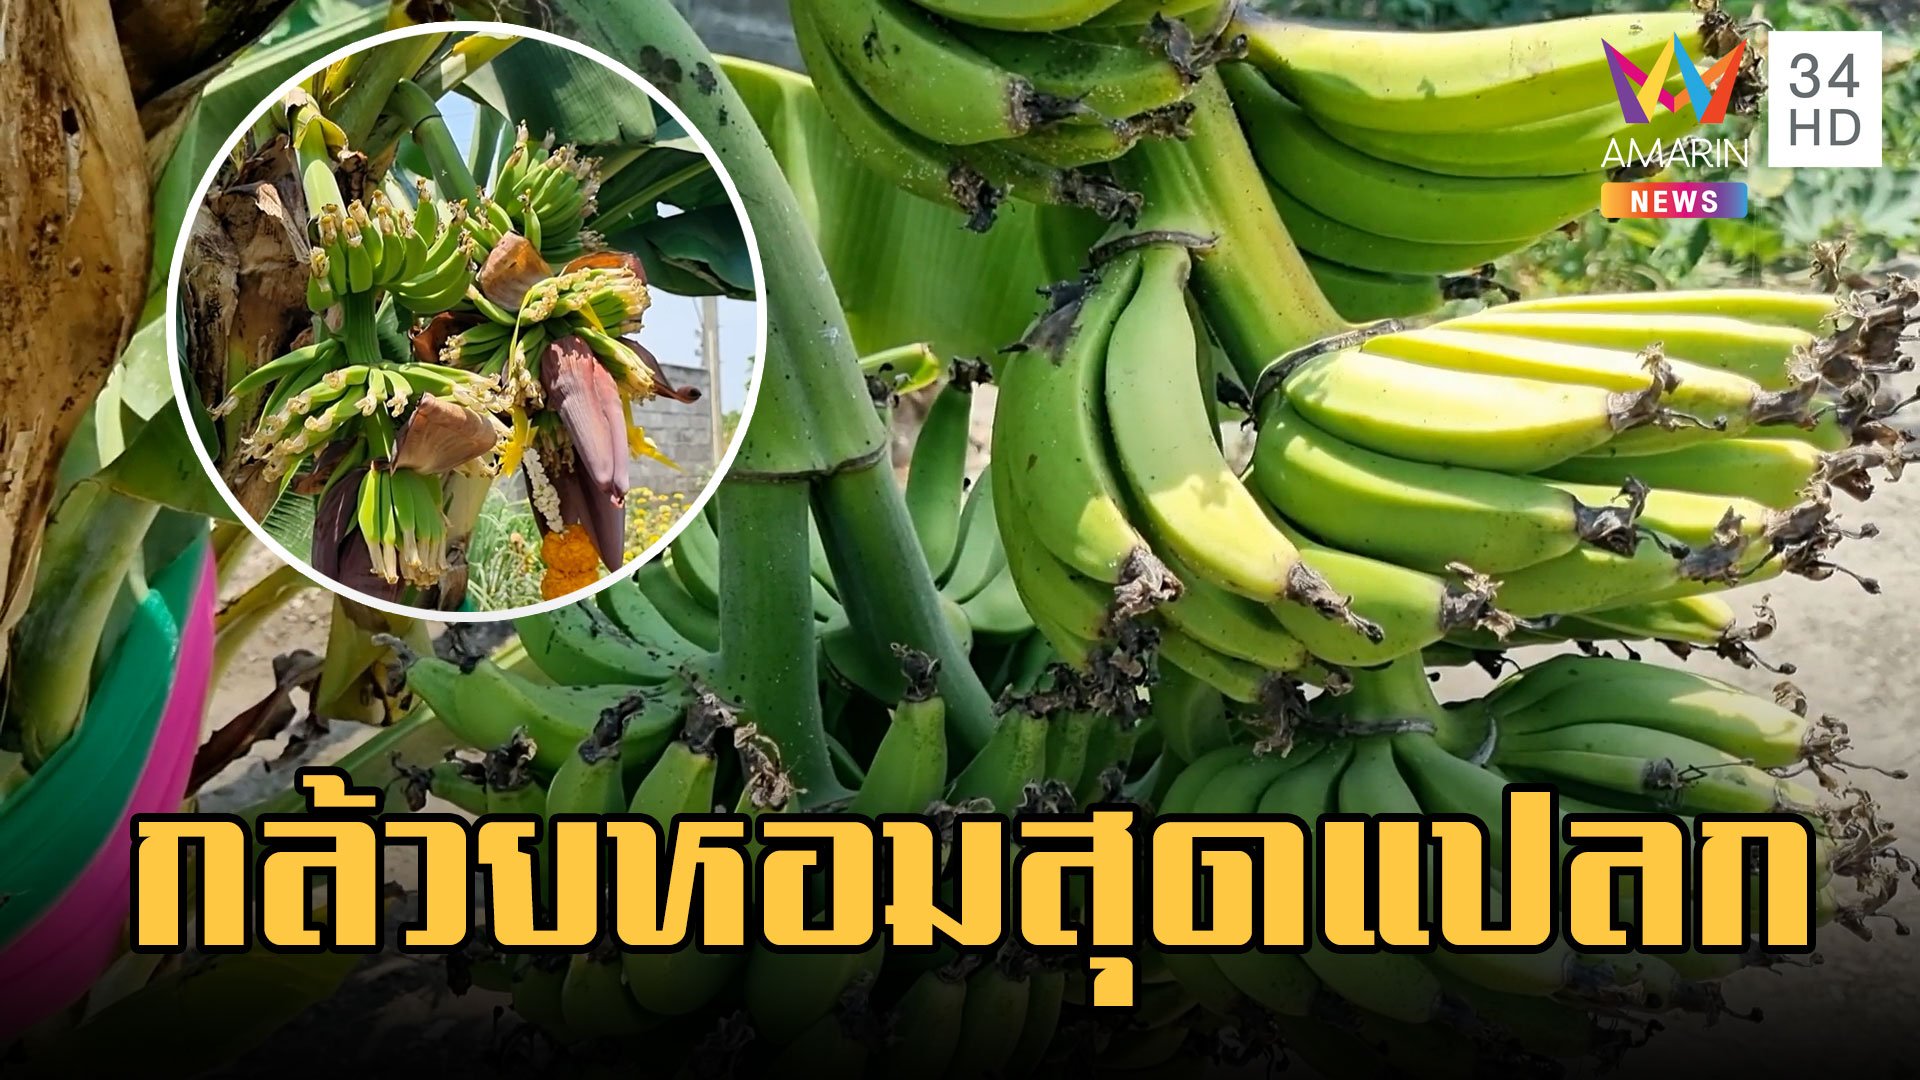 กล้วยหอมสุดแปลก! ต้นเดียวออกหลายเครือ รวมได้ 21 หวี | ข่าวอรุณอมรินทร์ | 30 มี.ค. 66 | AMARIN TVHD34